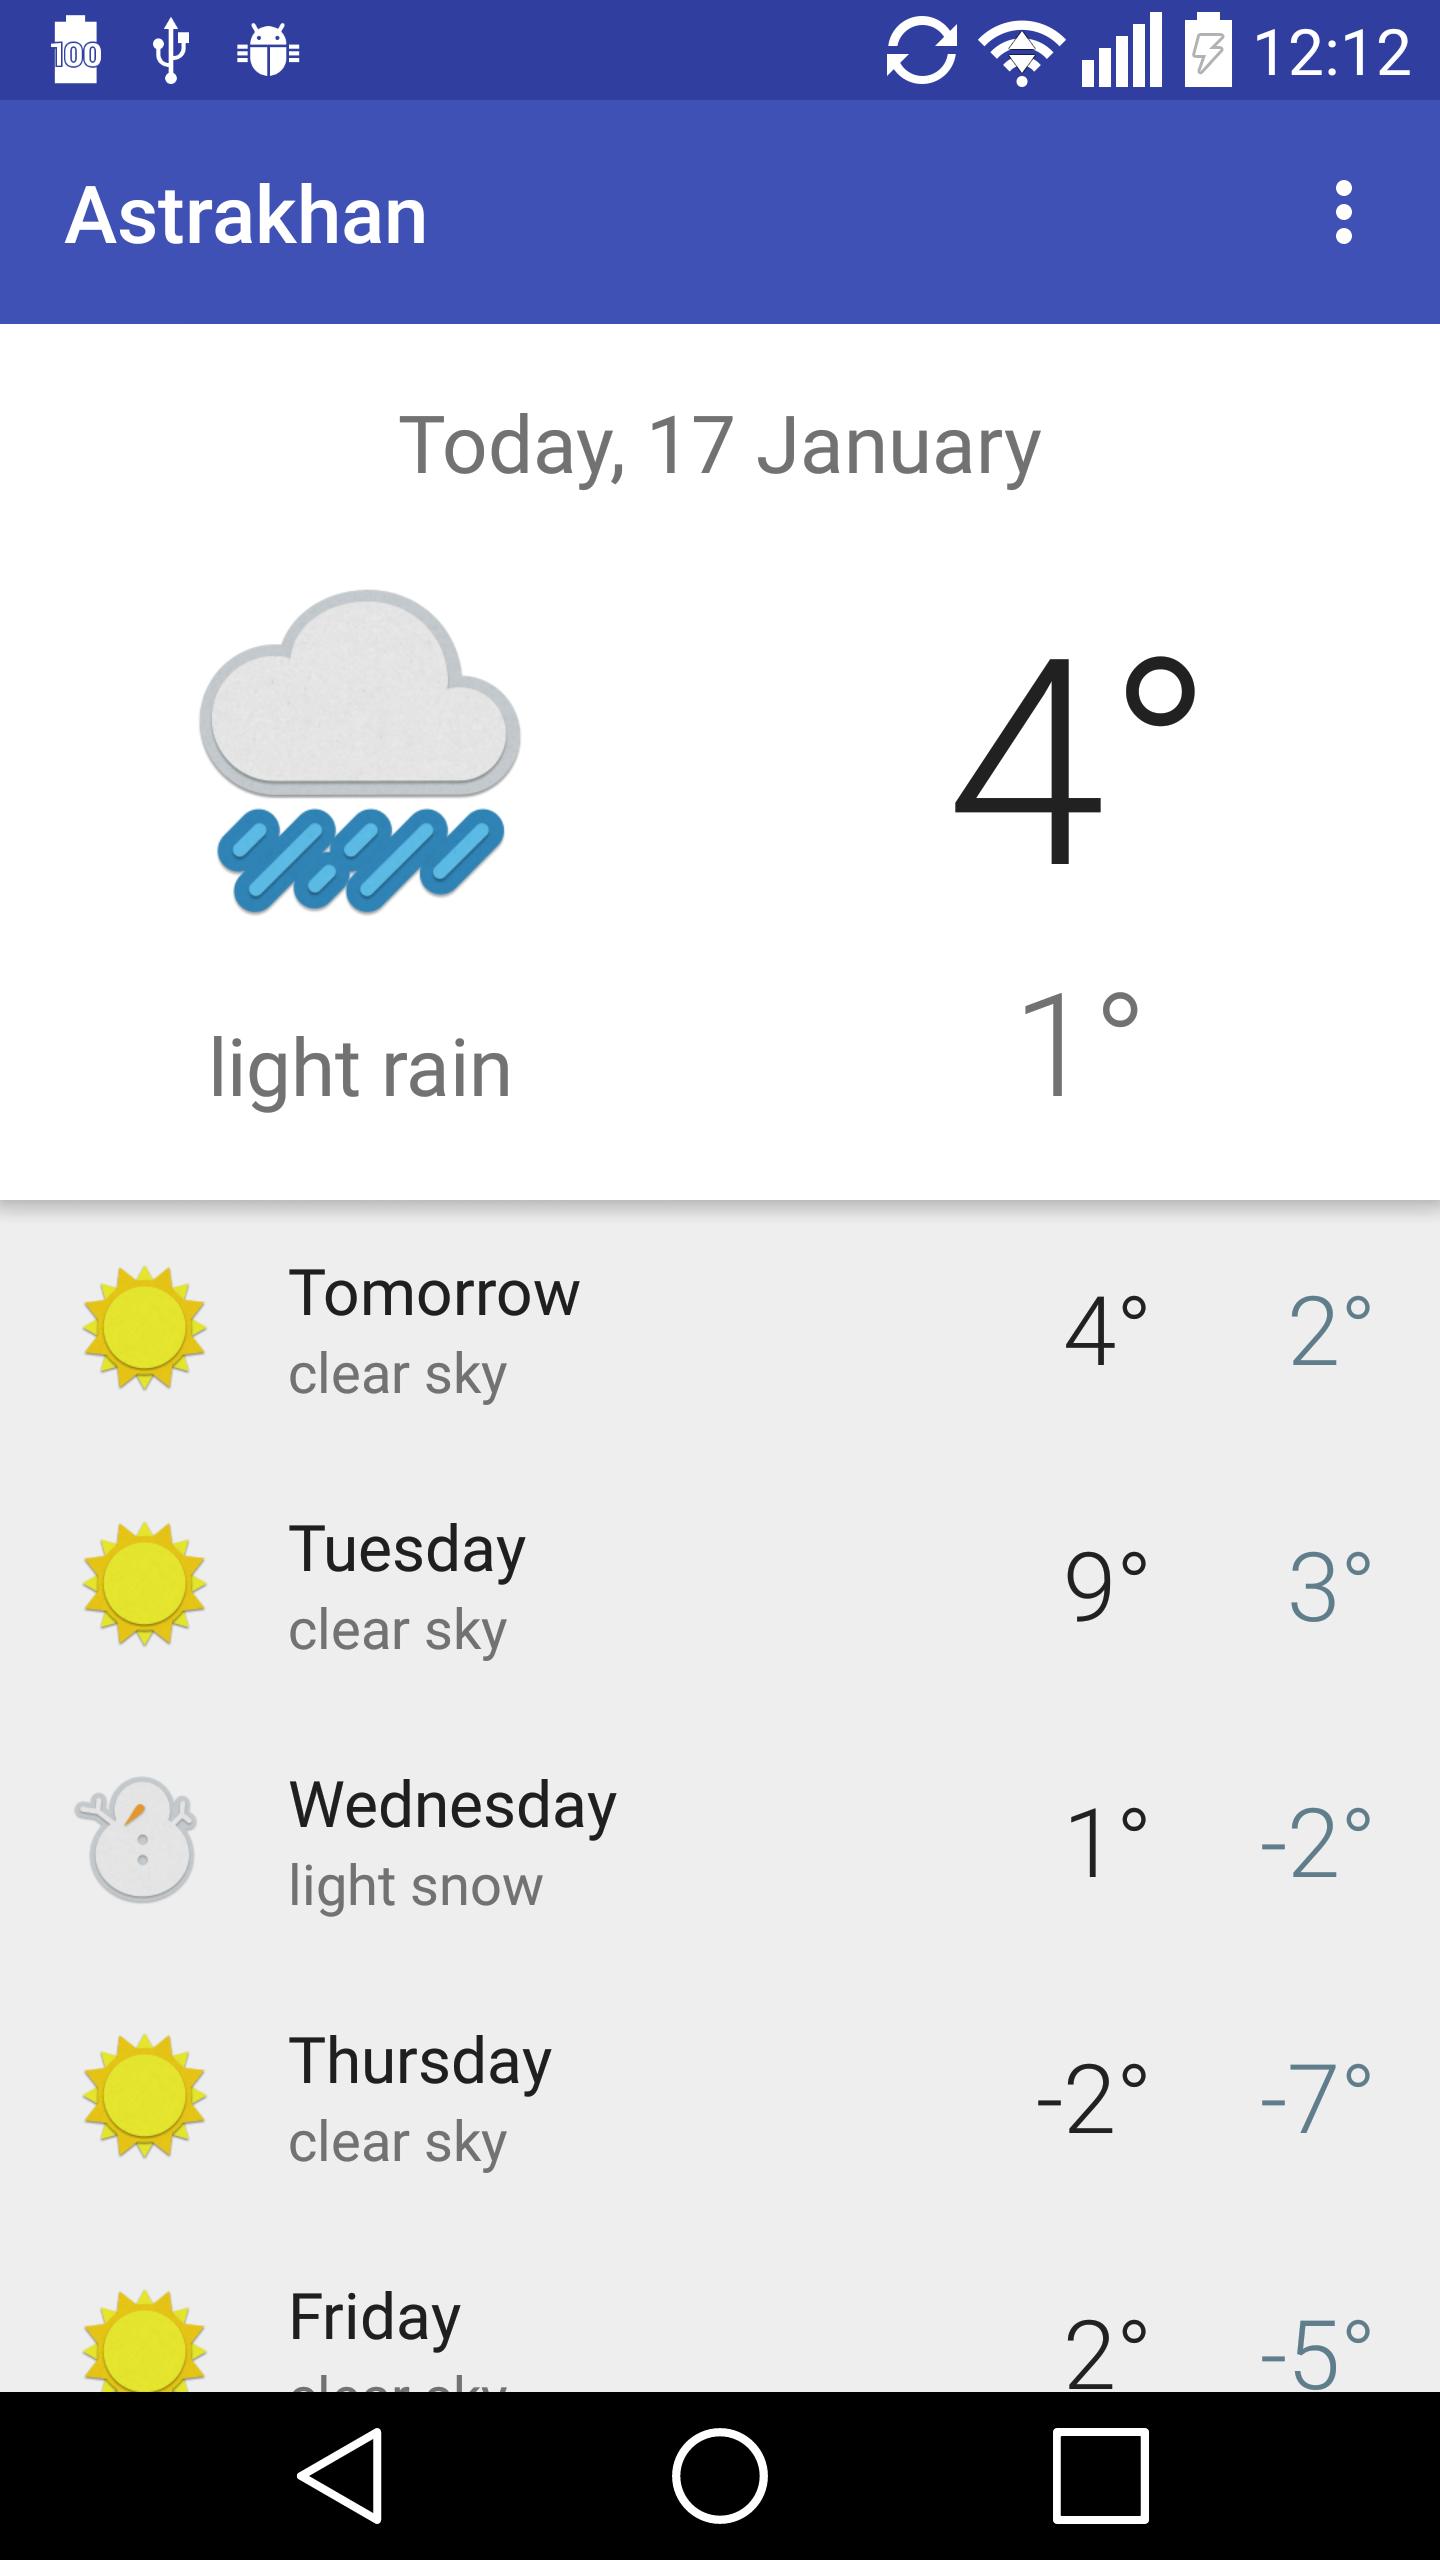 Https ya ru погода. Погода в Астрахани. Погода в Астрахани на сегодня. Погода в Астрахани сейчас. Астрахан сегодня погода.